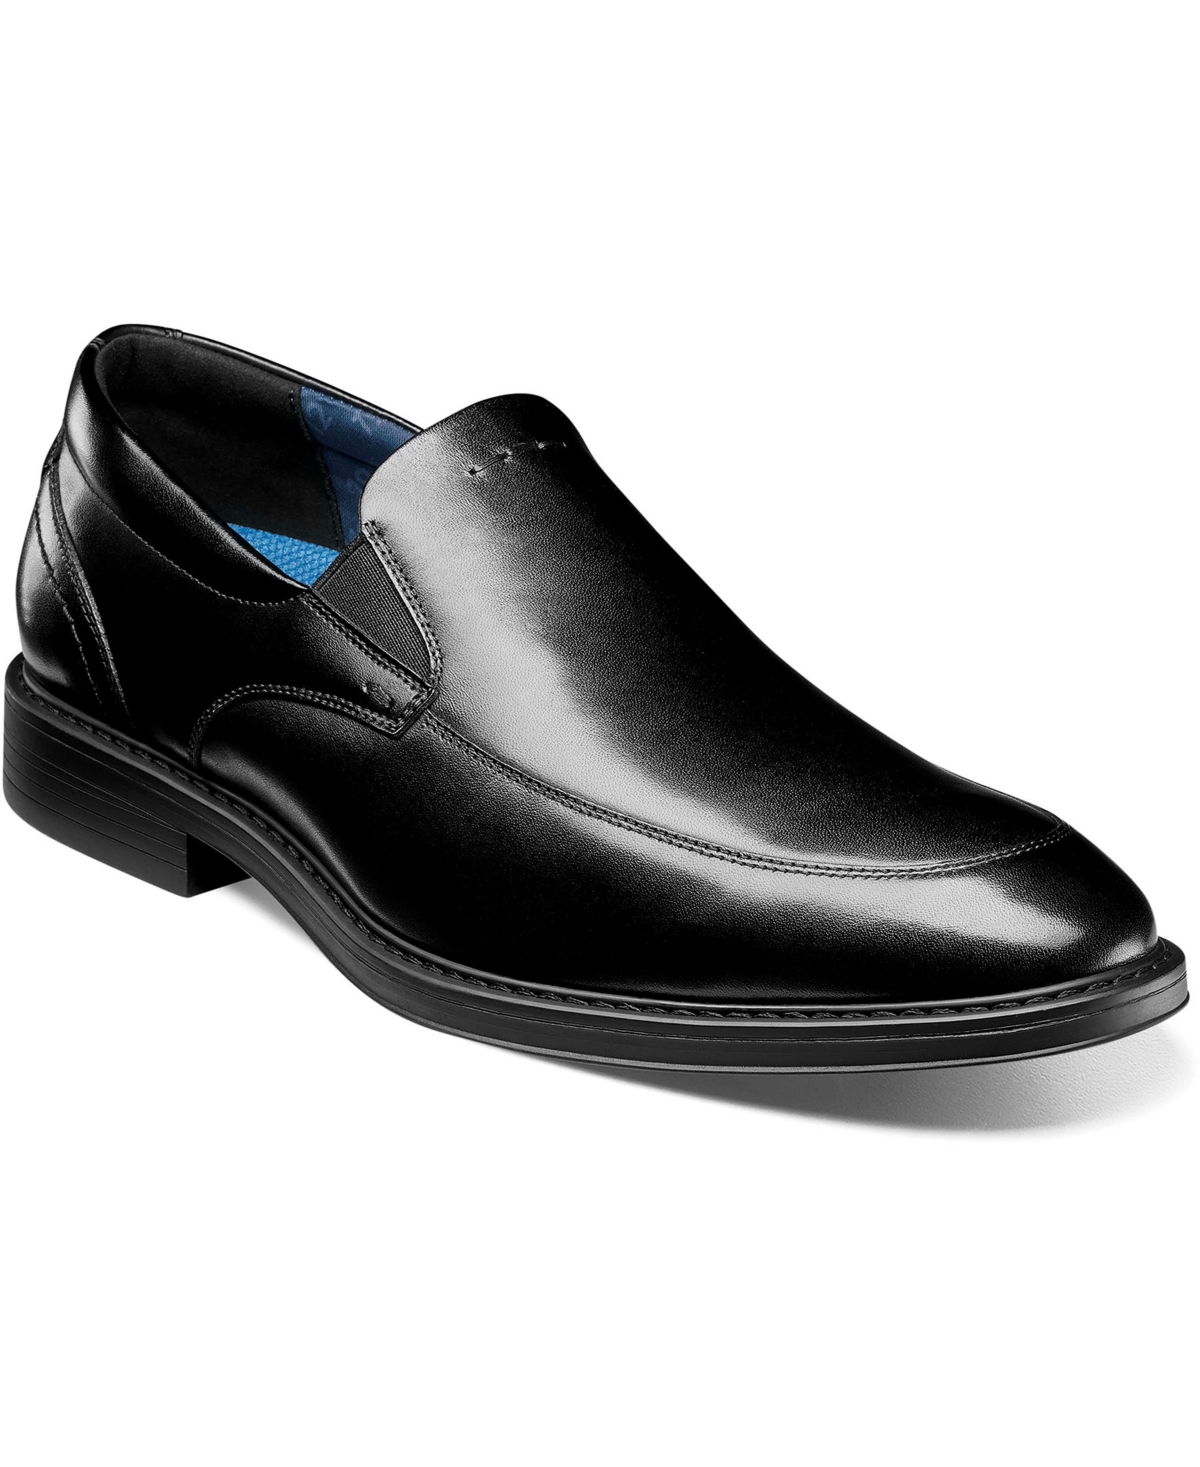 Men's Centro Flex Venetian Moc Toe Shoes - Black Smooth